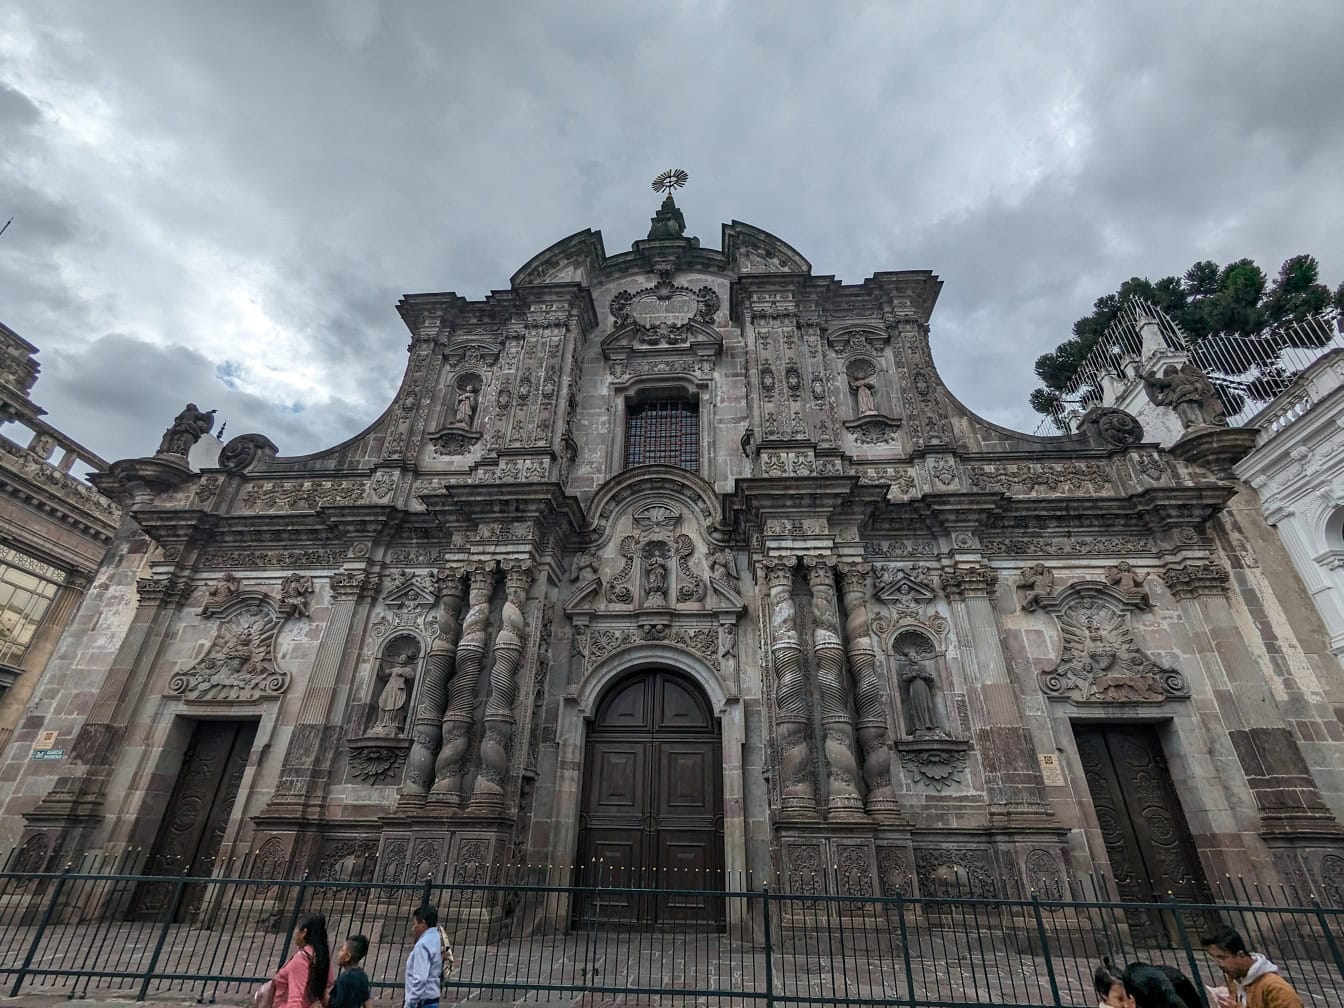 Η ρωμαιοκαθολική εκκλησία και το μοναστήρι του Αγίου Ιγνατίου της Λογιόλα της Εταιρείας του Ιησού στο Κίτο, πρωτεύουσα του Ισημερινού